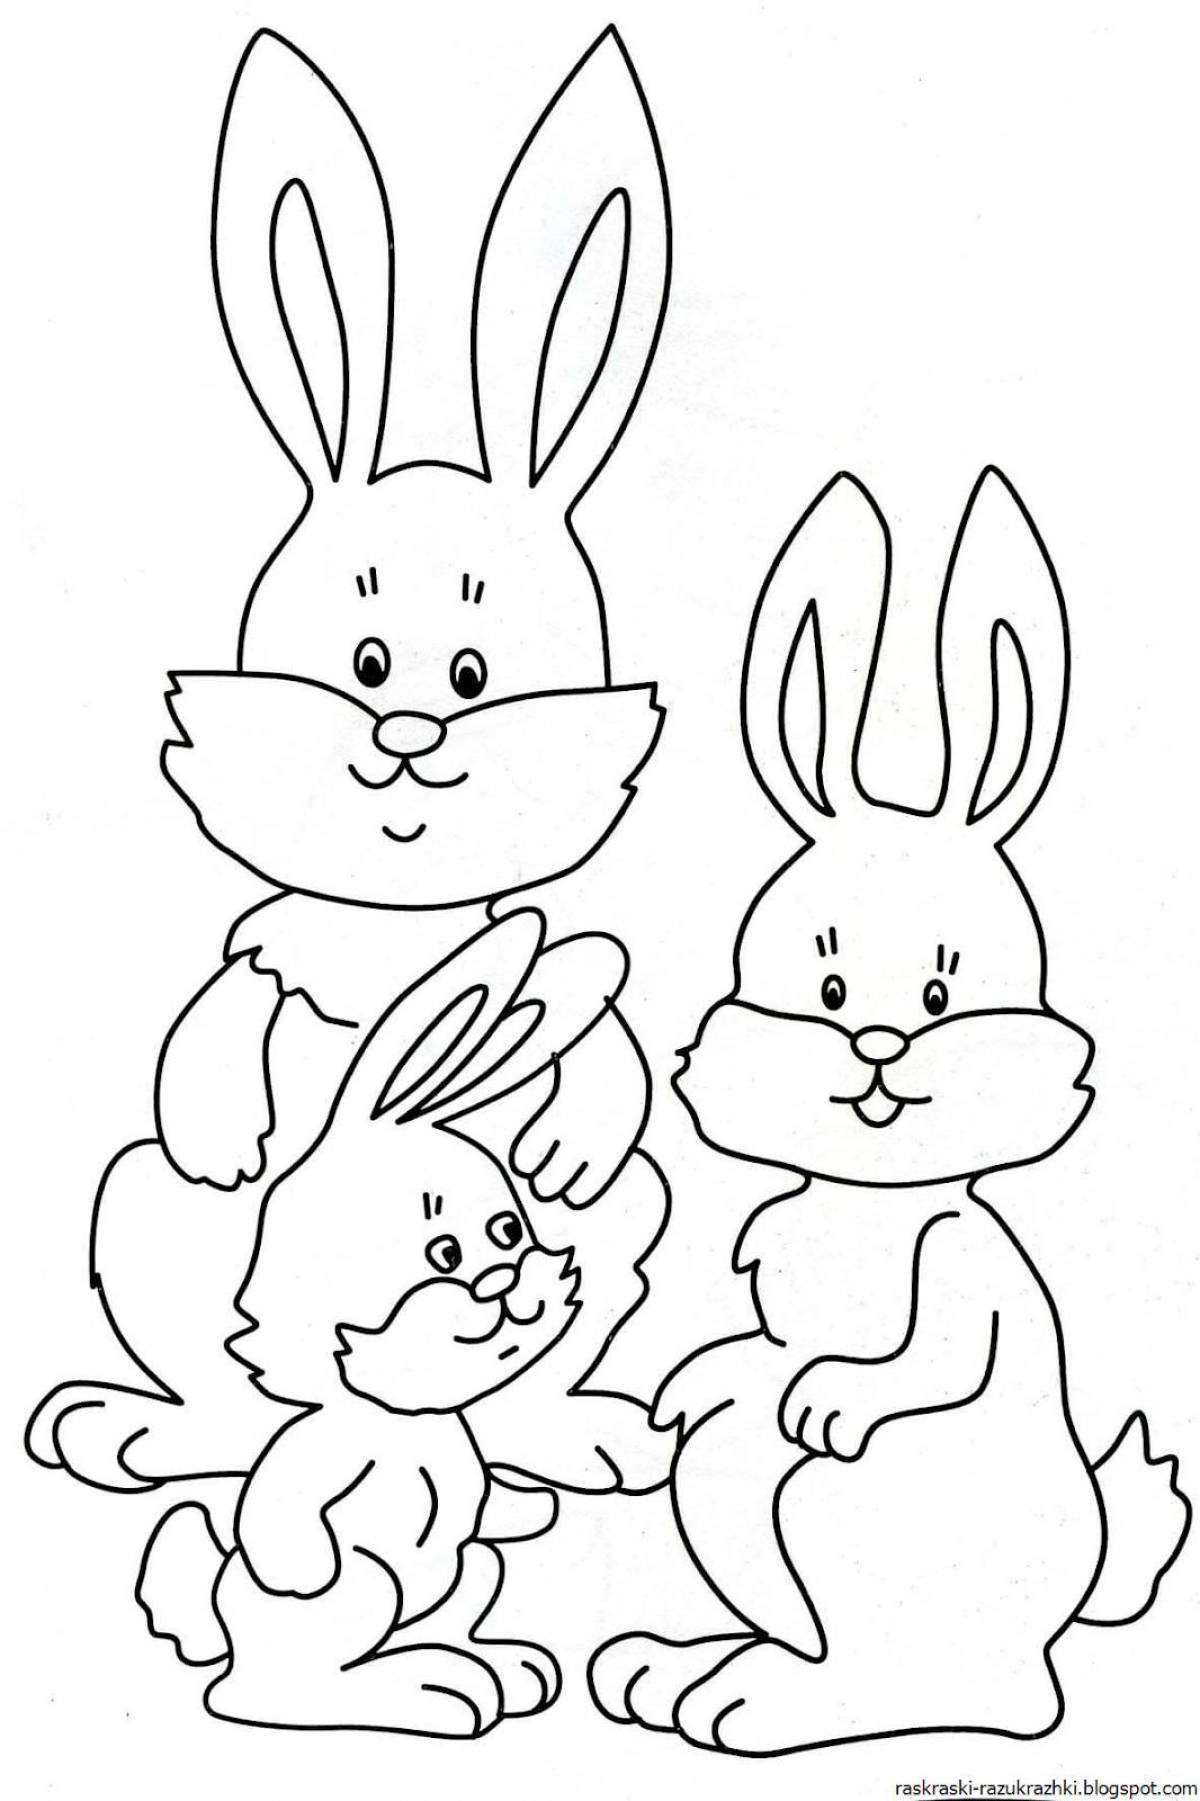 Изысканная раскраска зайца для детей